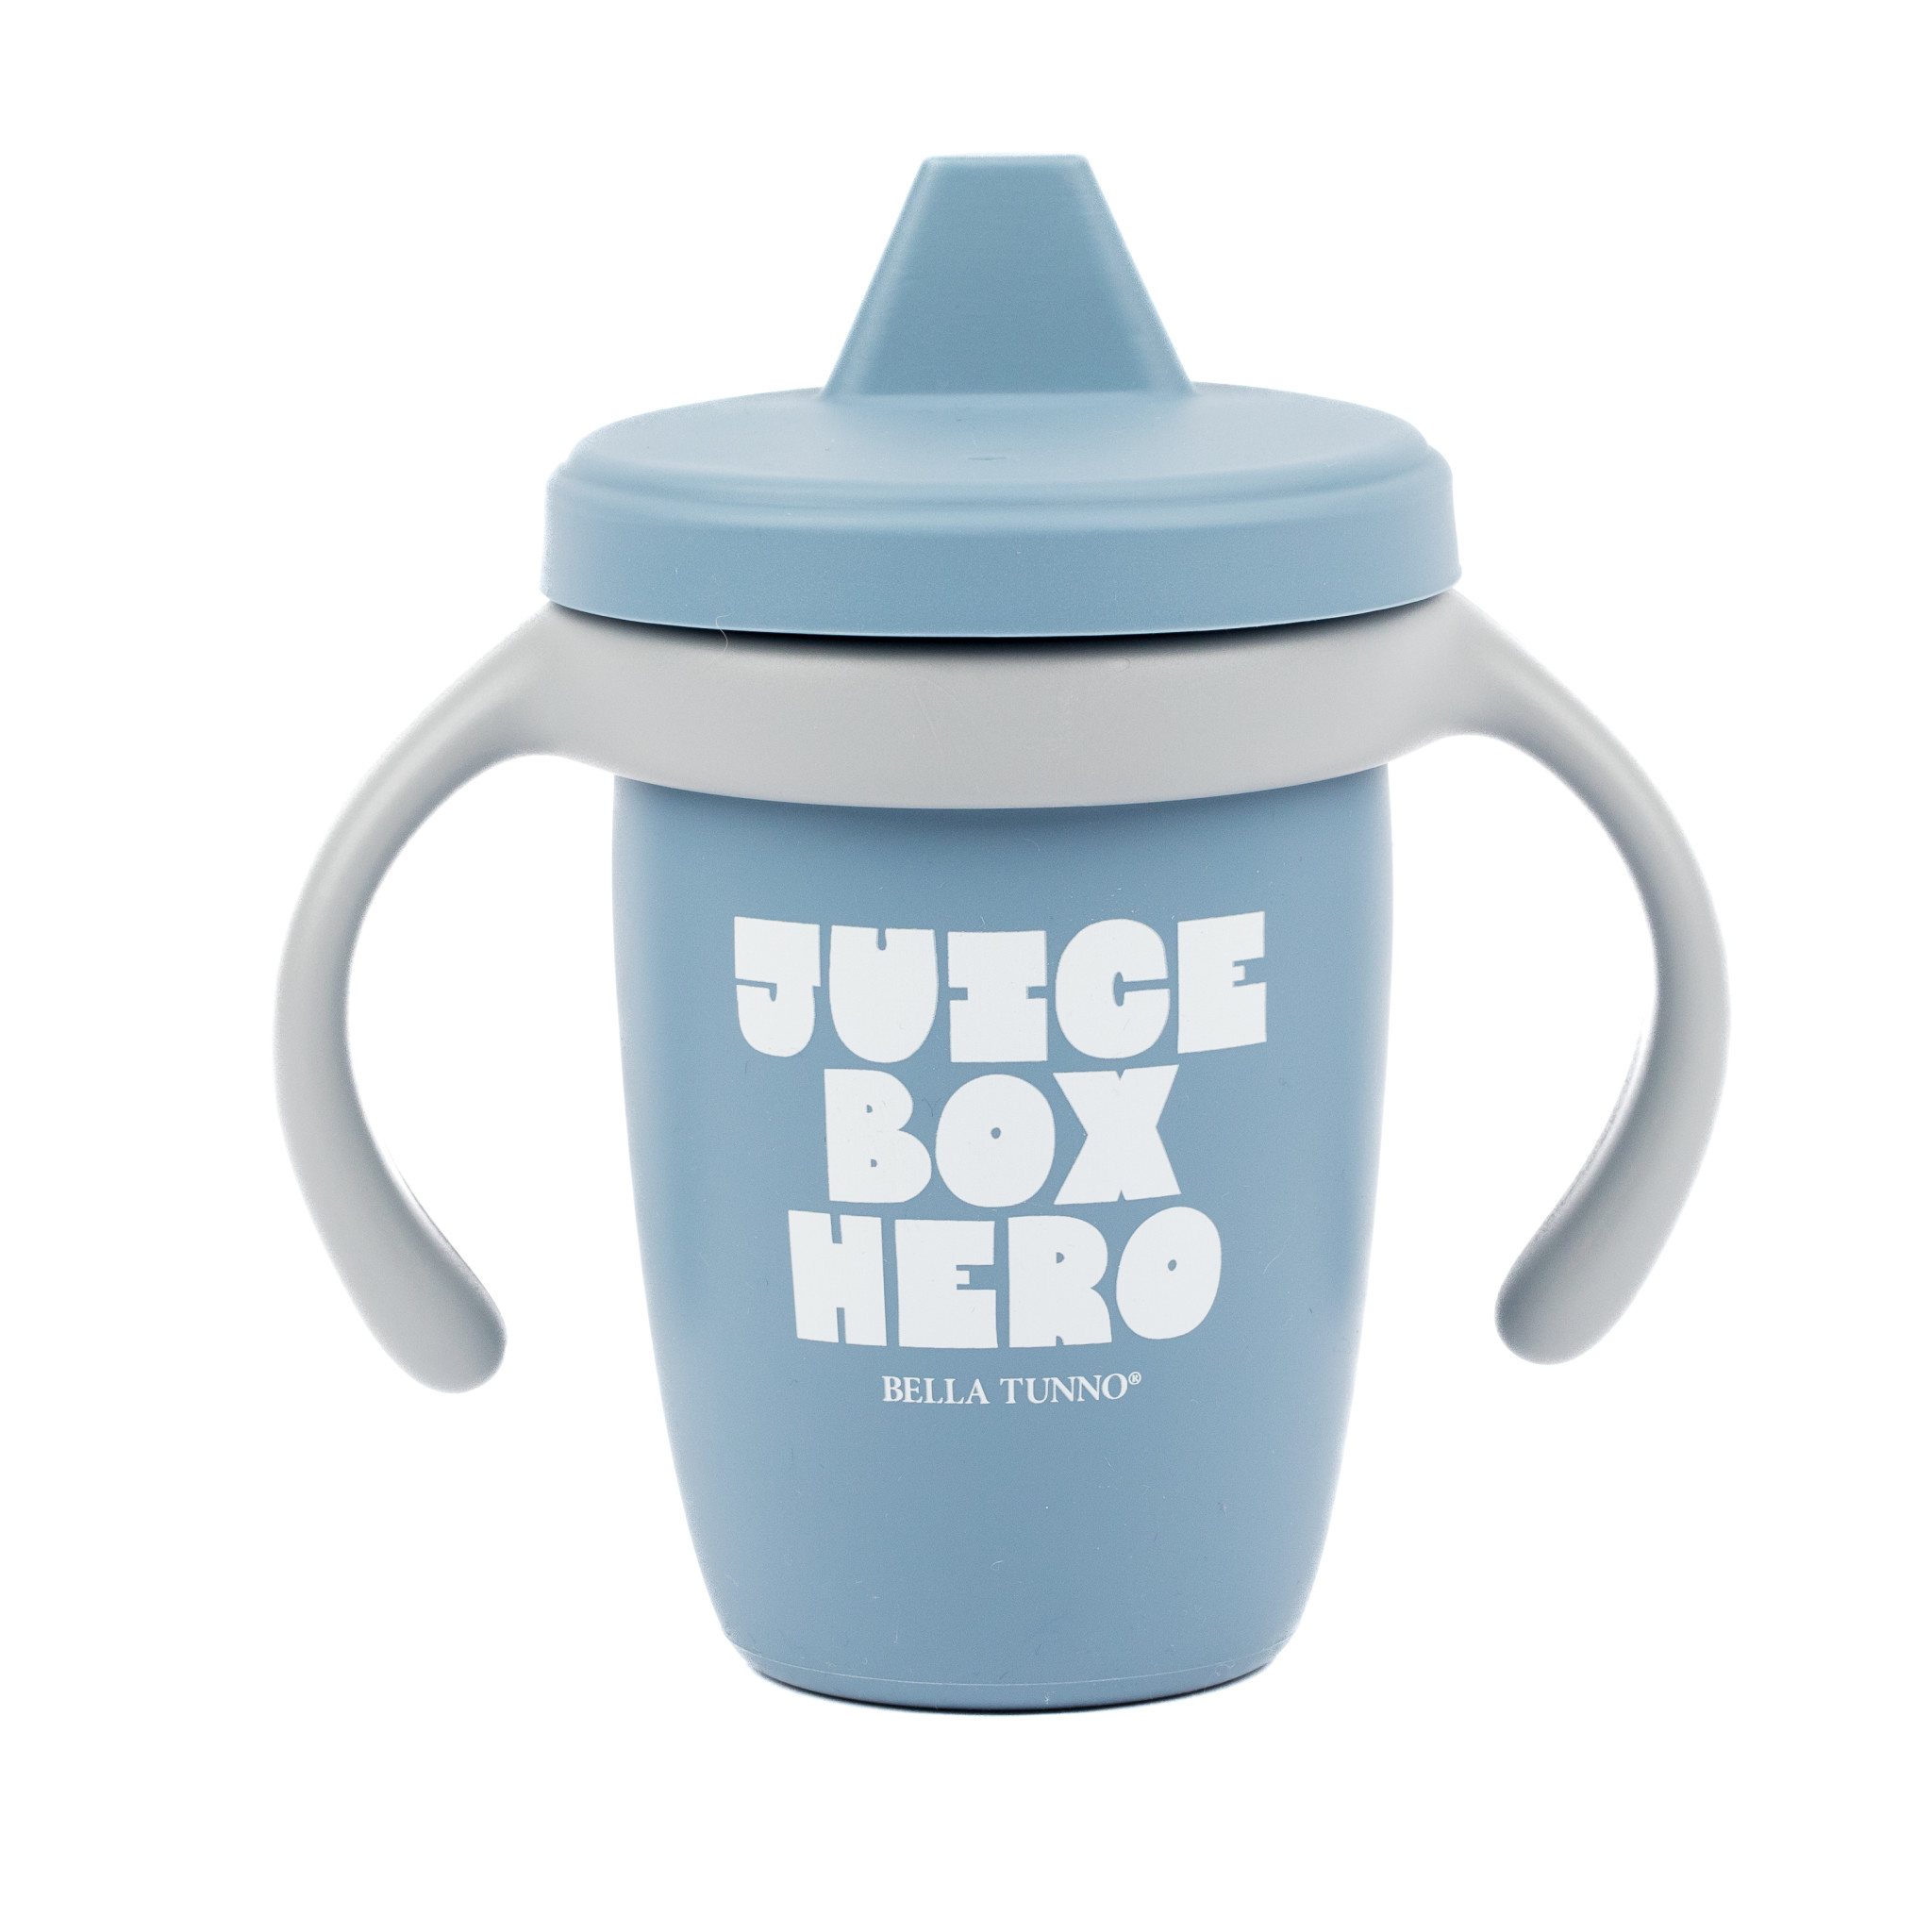 Bella Tunno Sippy Cup - Juice Box Hero